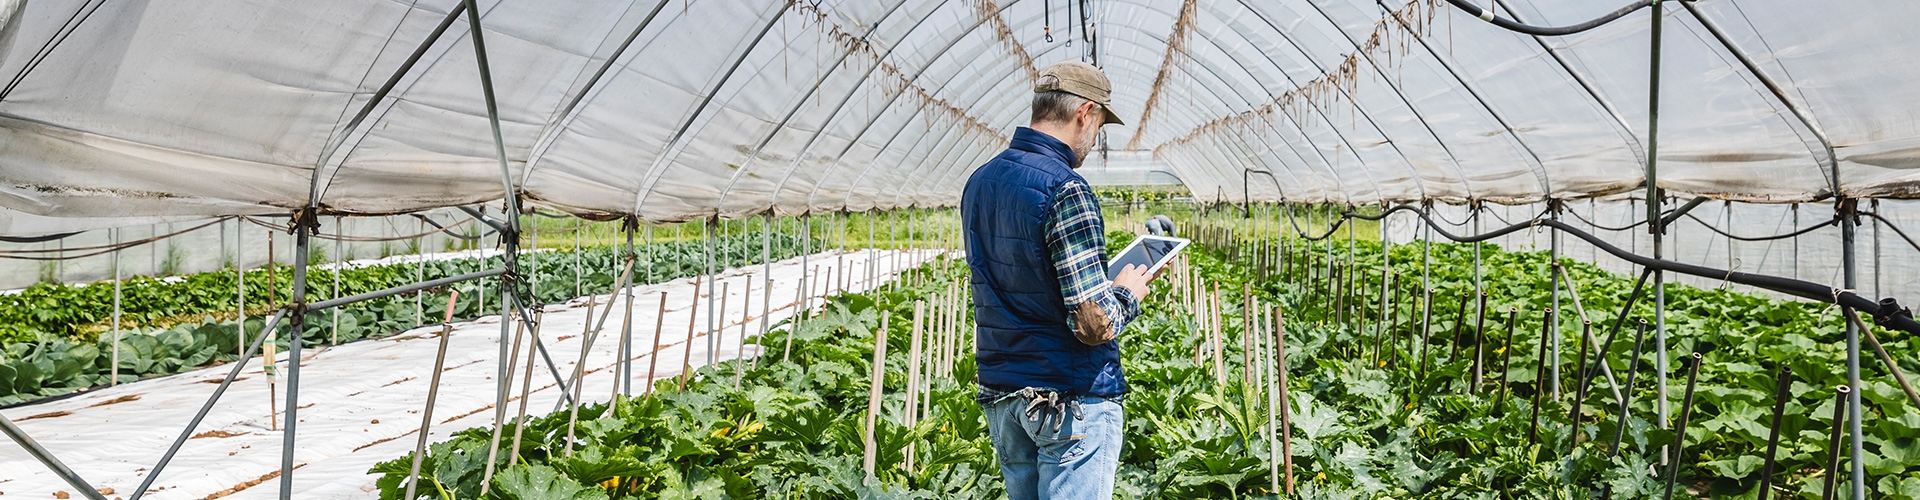 Financiación agraria a largo plazo para agricultores profesionales - Agricultor profesional con chaleco azul y camisa de cuadro, trabajando en sus cultivos con una tablet en la mano